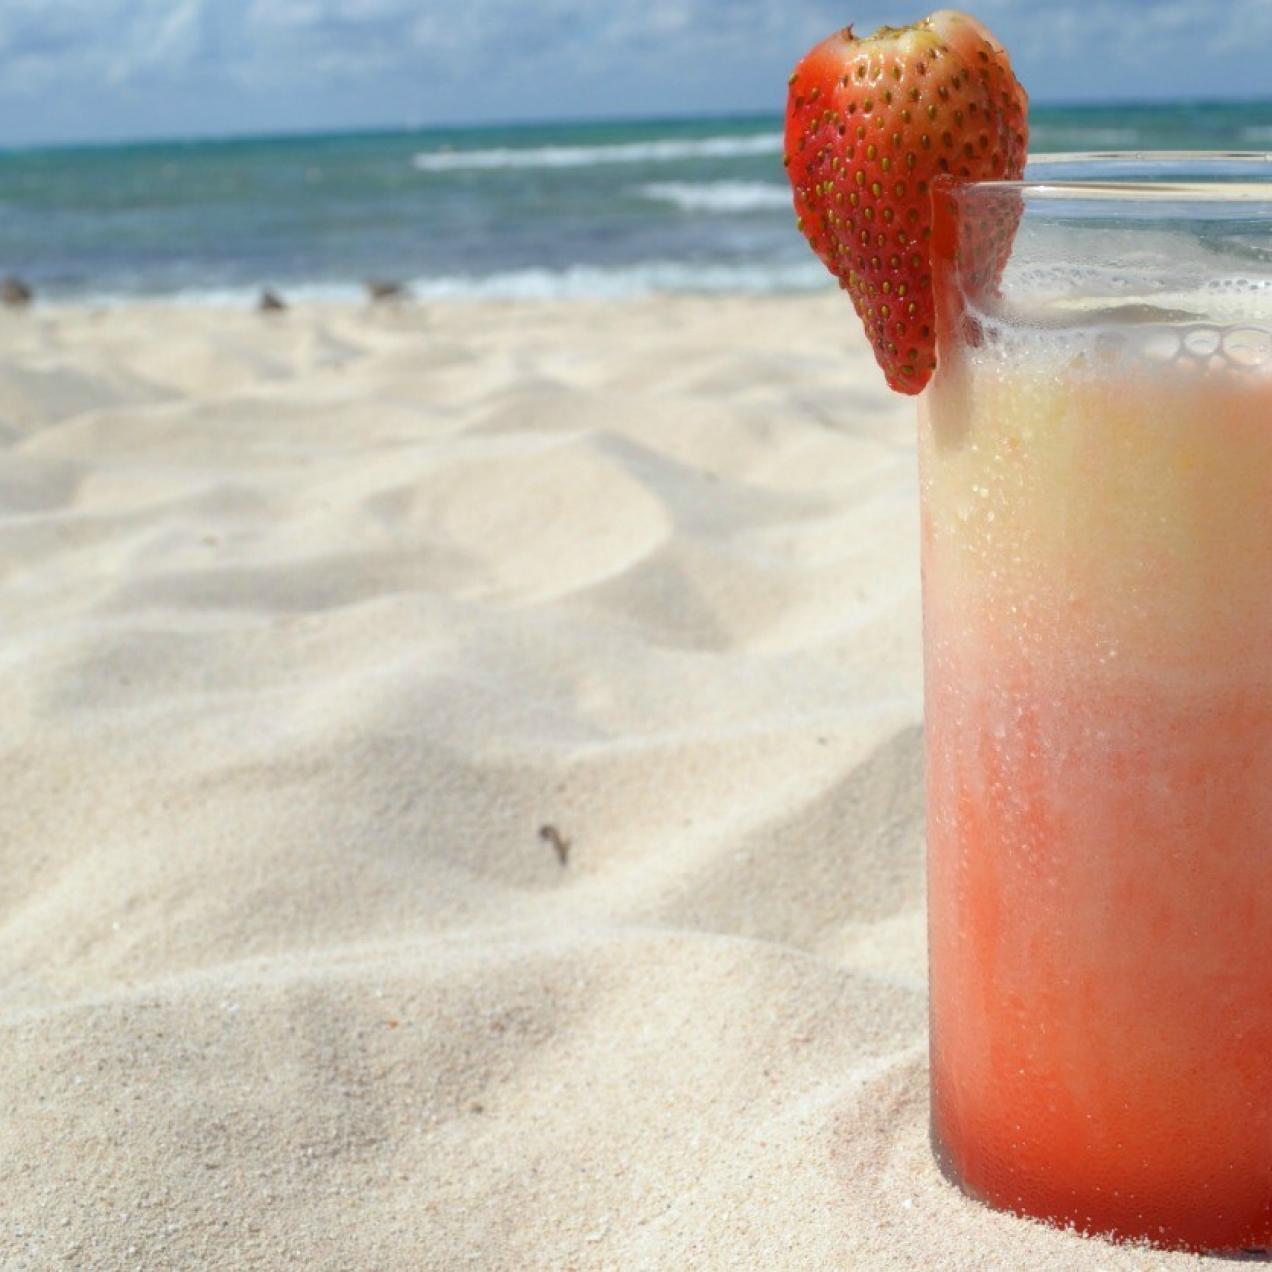 “Miami Vice” Semana de Cocteles en Sandos Resort,  Día tres: